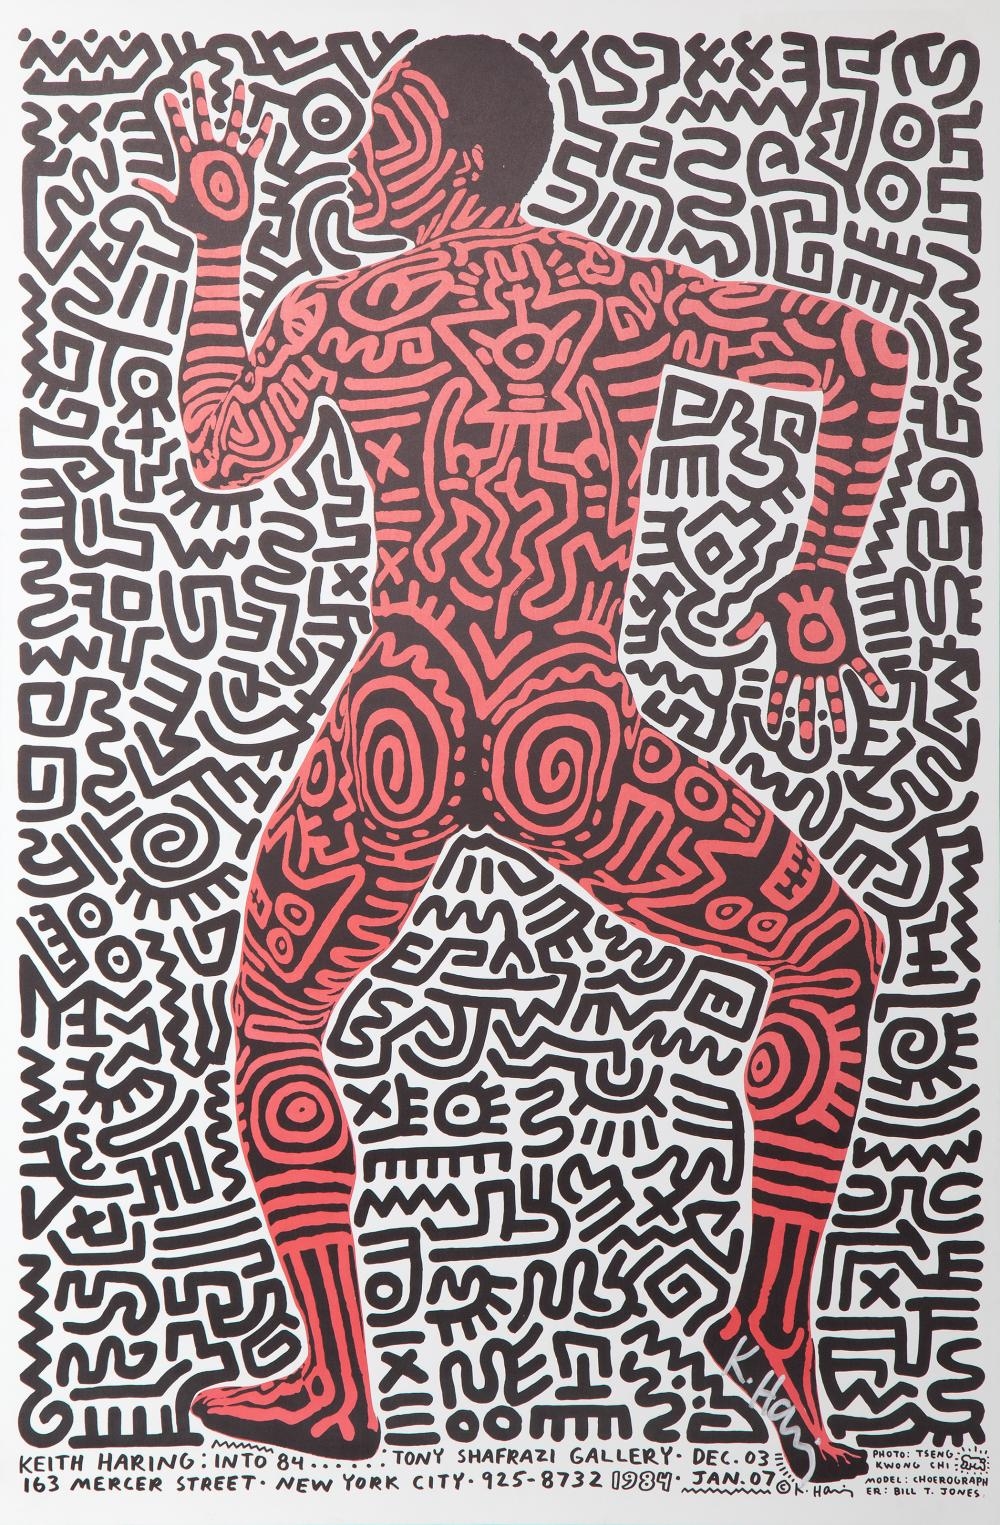 INTO 84: TONY SHAFRAZI GALLERY - Keith Haring